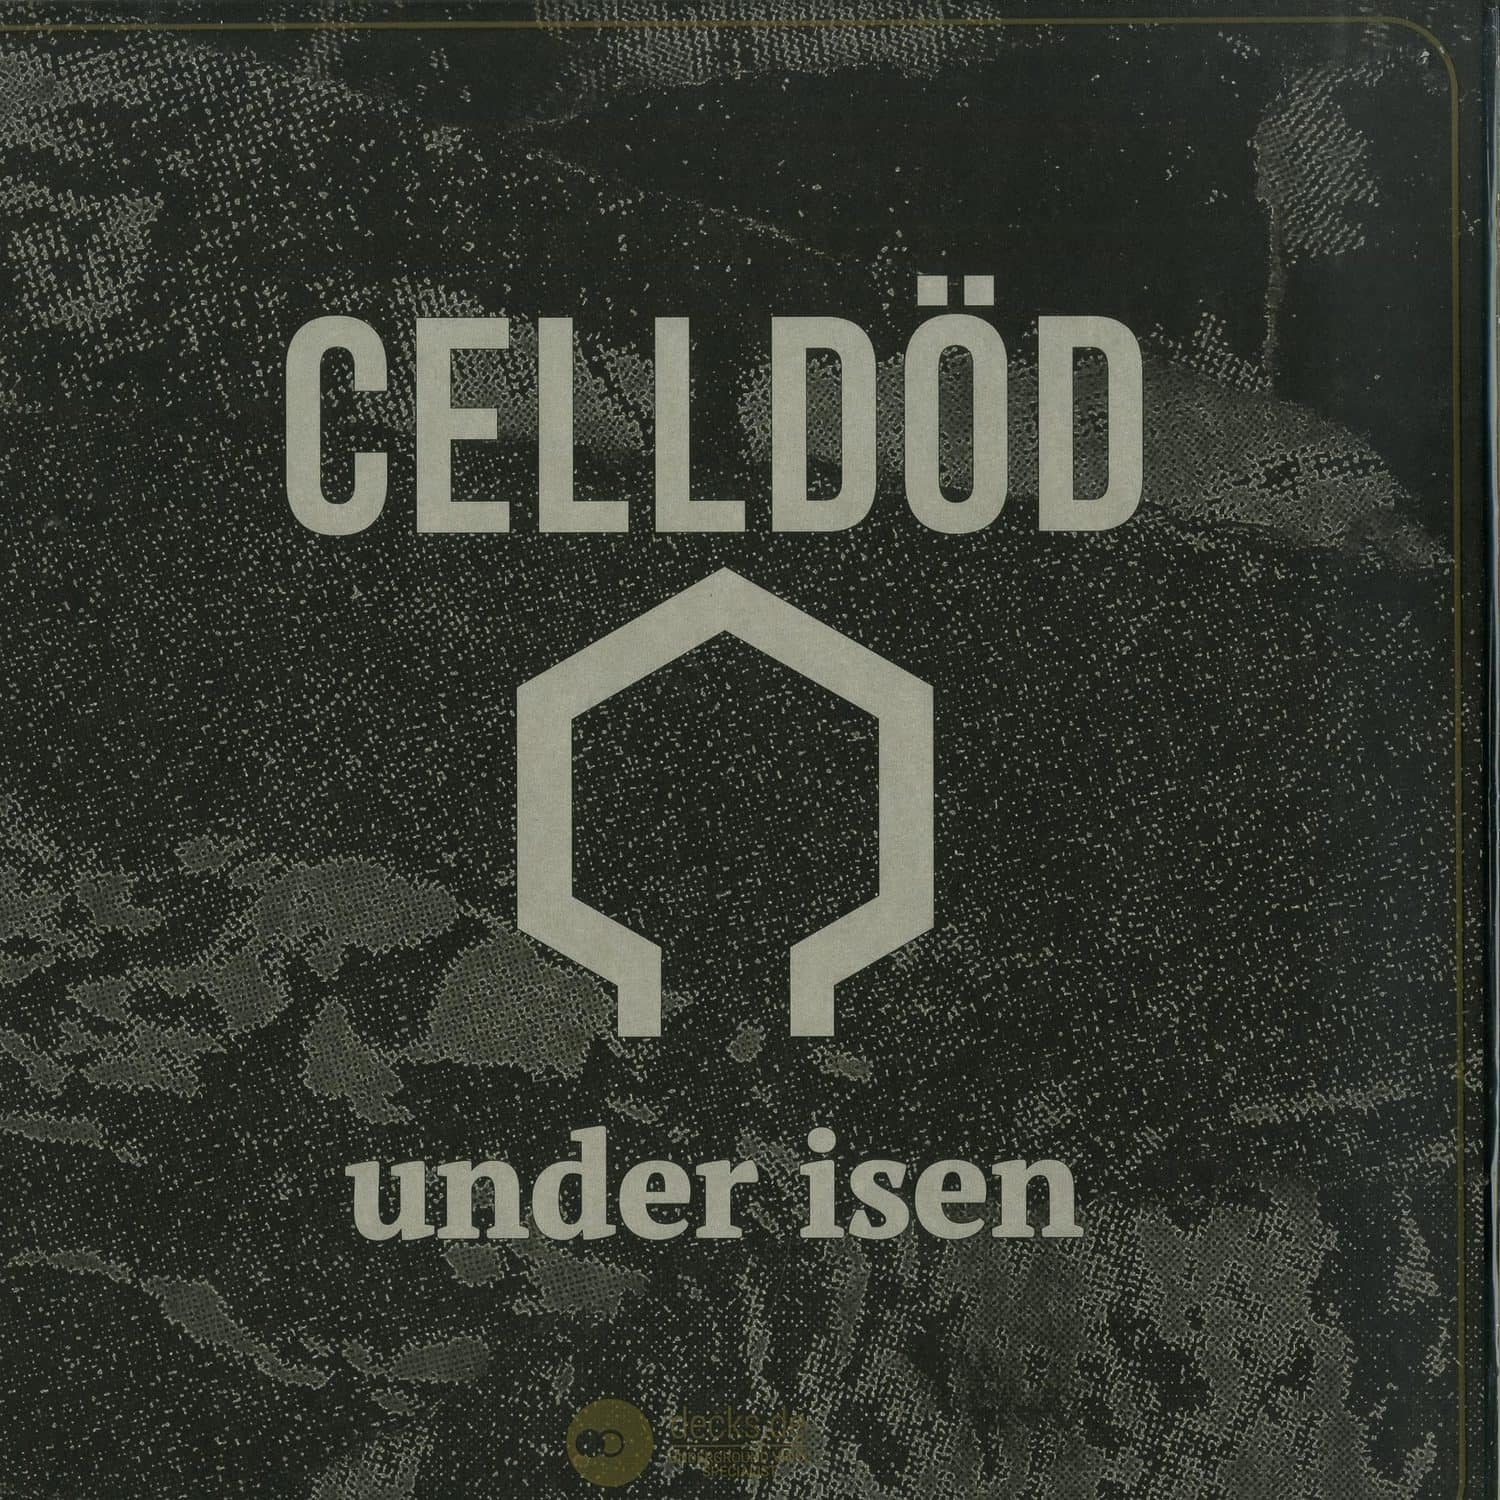 Celldod - UNDER ISEN